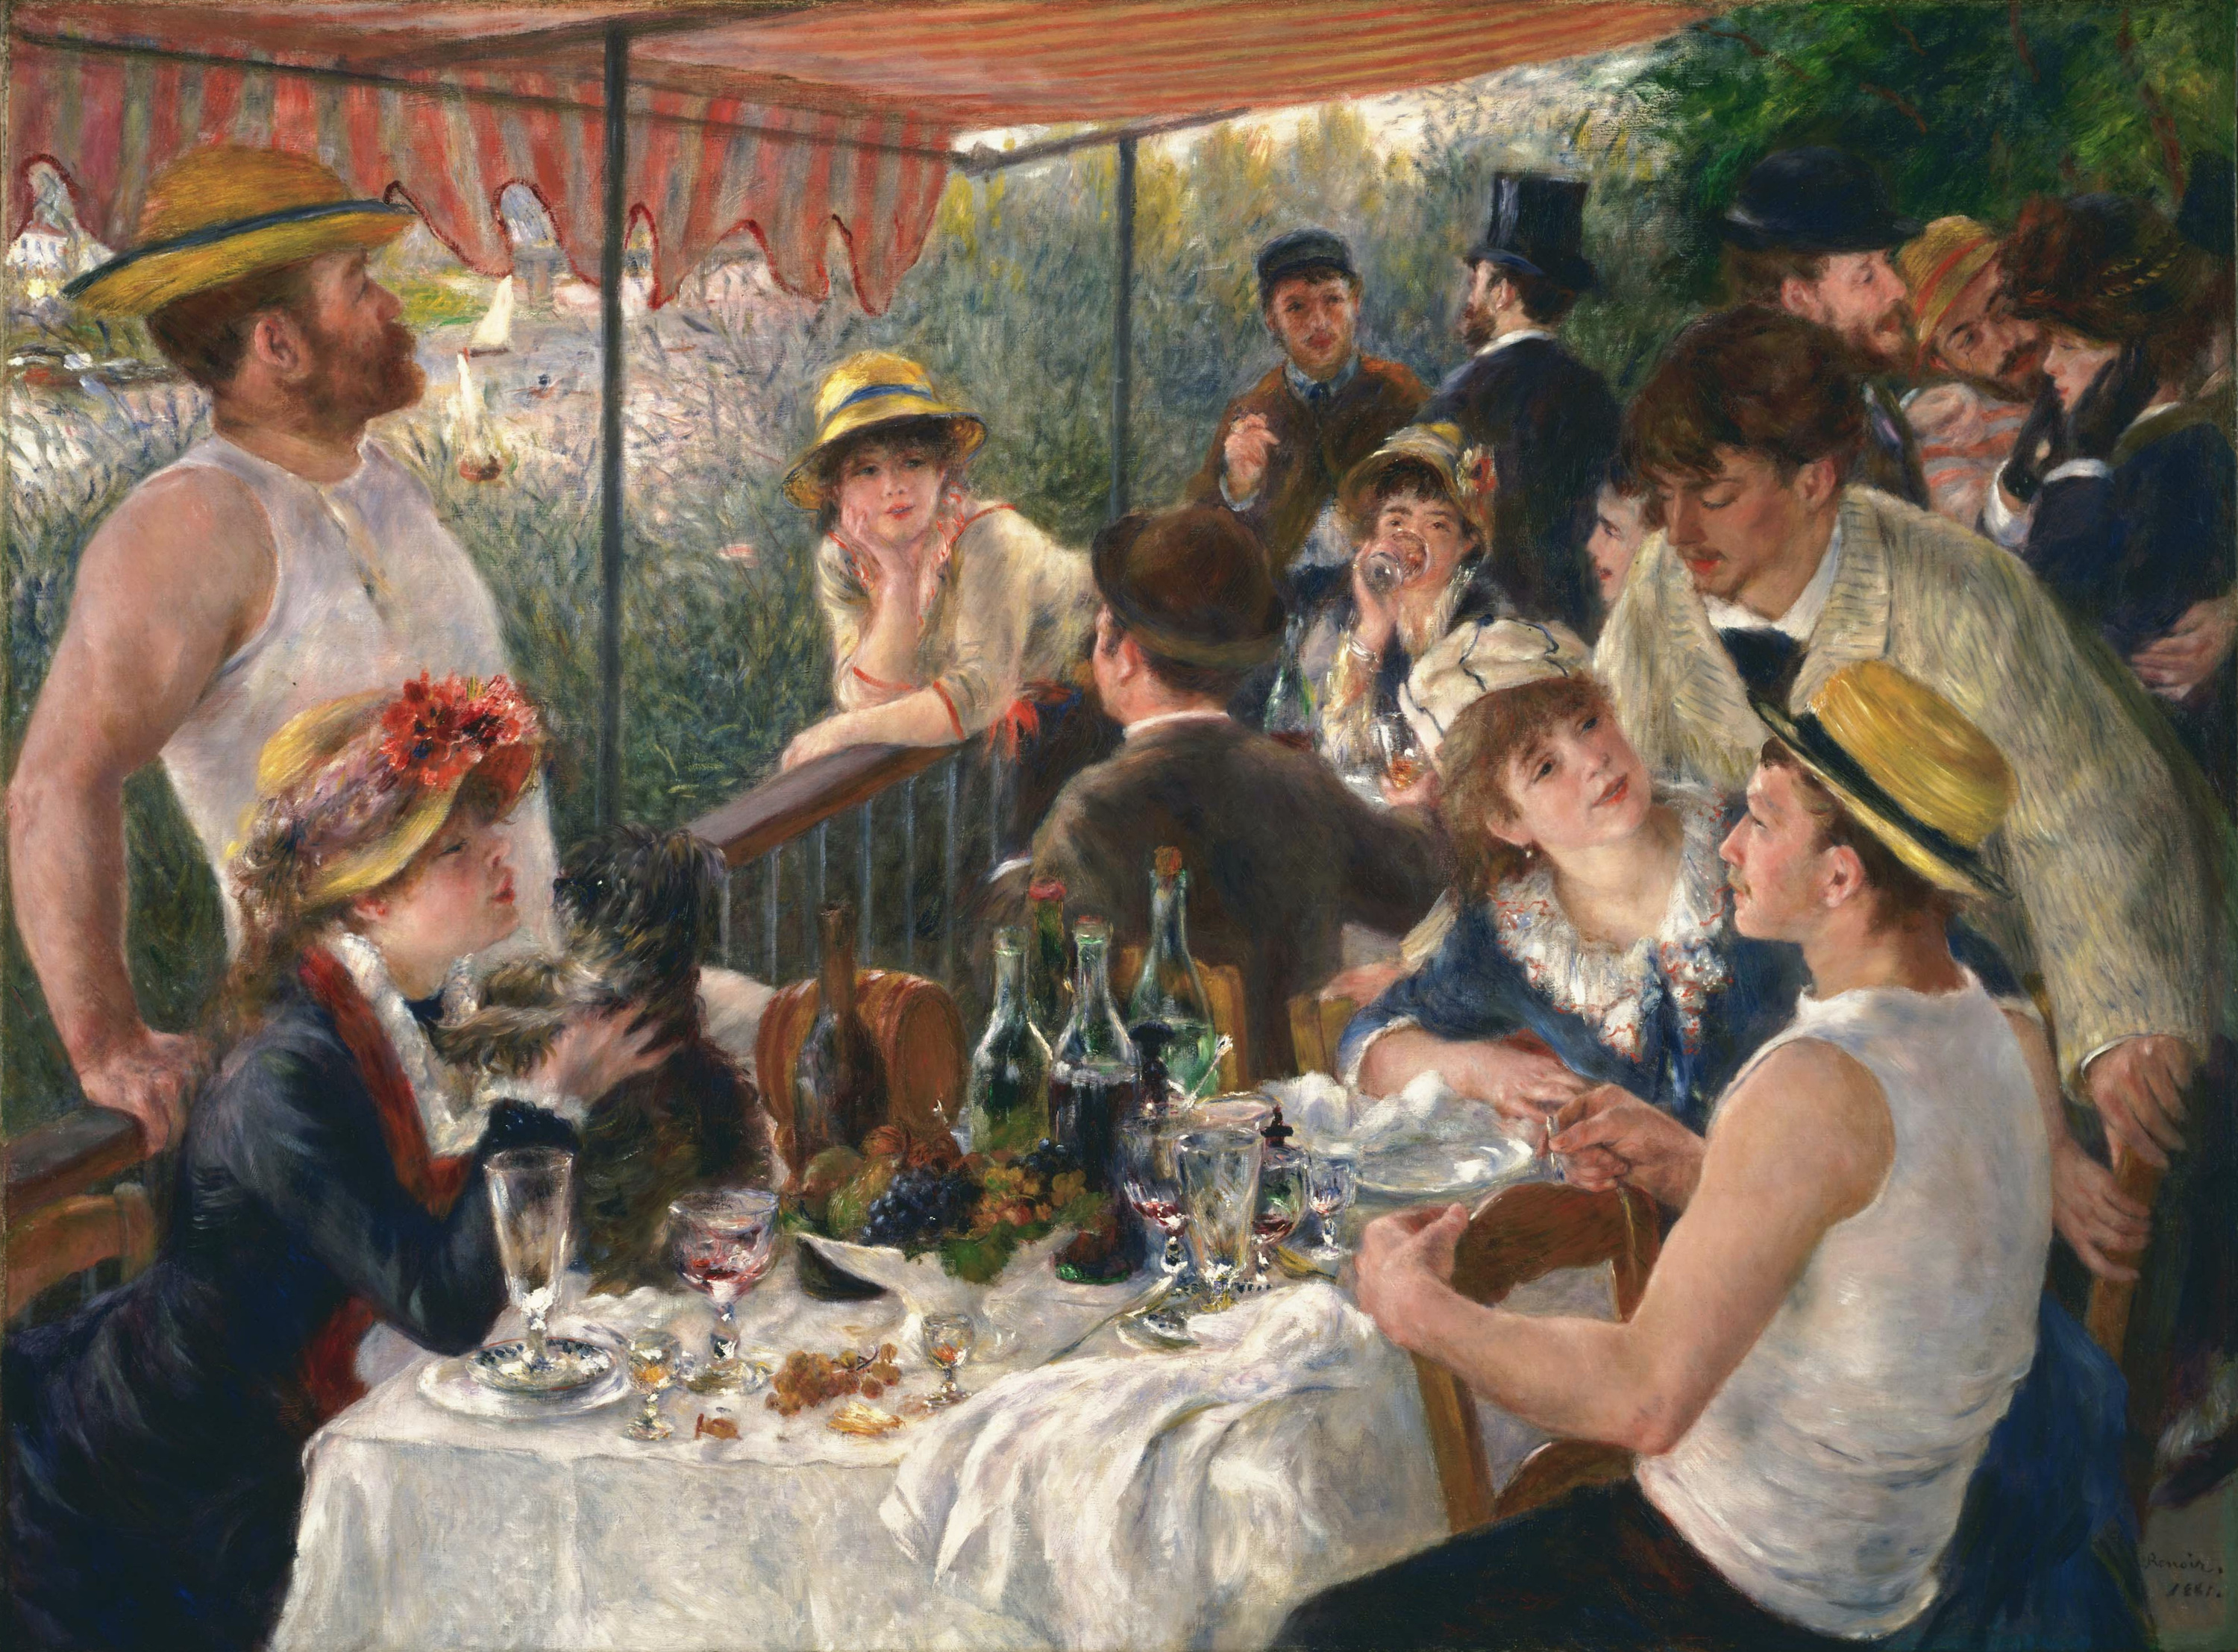 La colazione dei canottieri by Pierre-Auguste Renoir - 1880-1881 - 69.13 x 51.25 pollici 